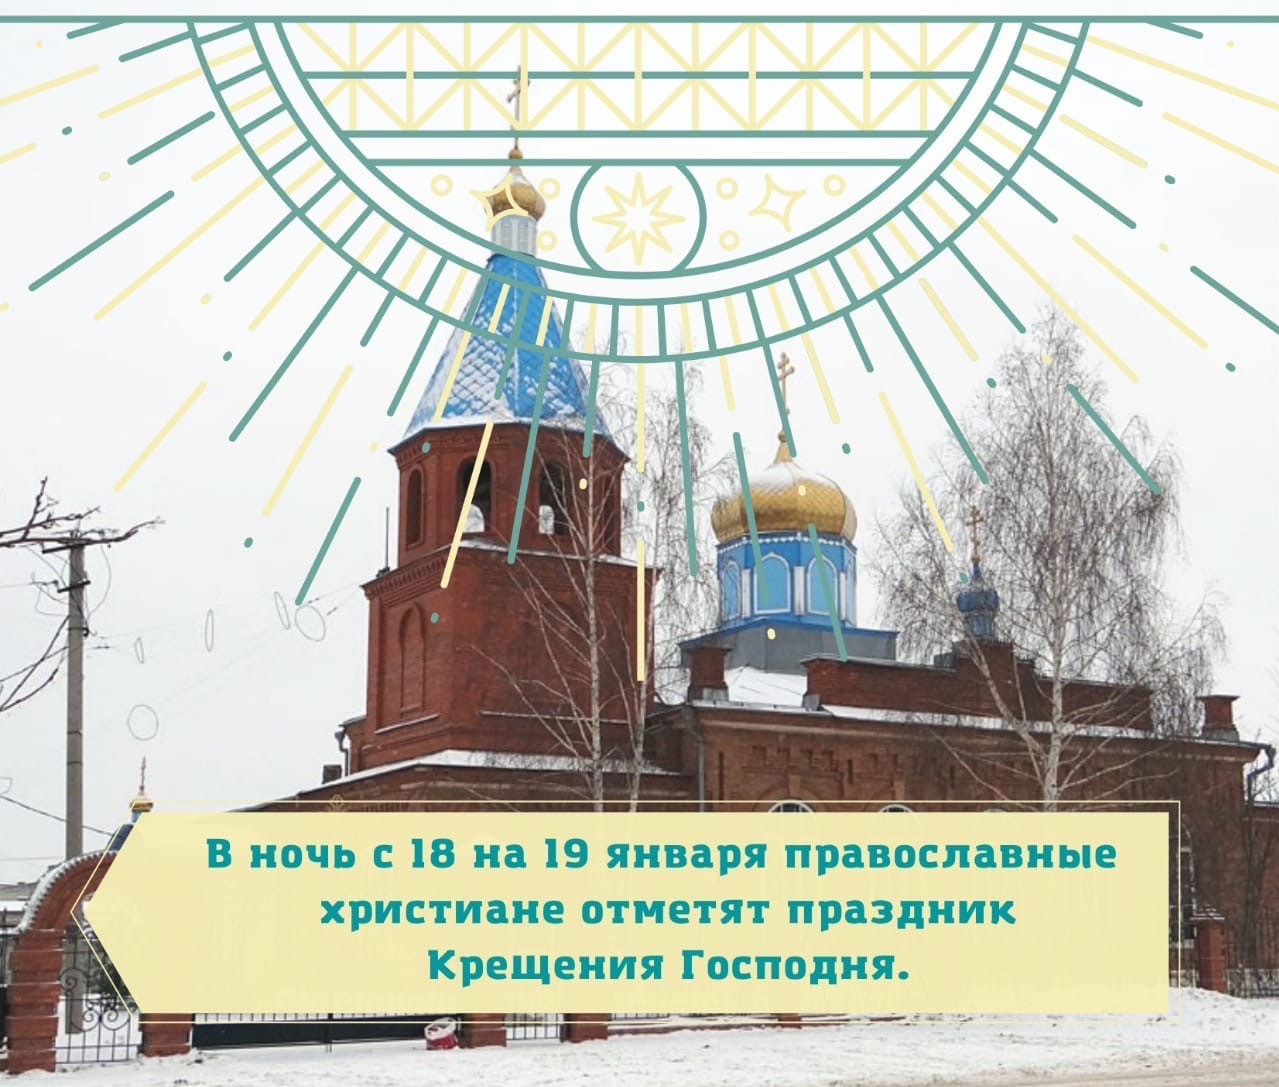 В ночь с 18 на 19 января православные христиане отметят праздник Крещения Господня